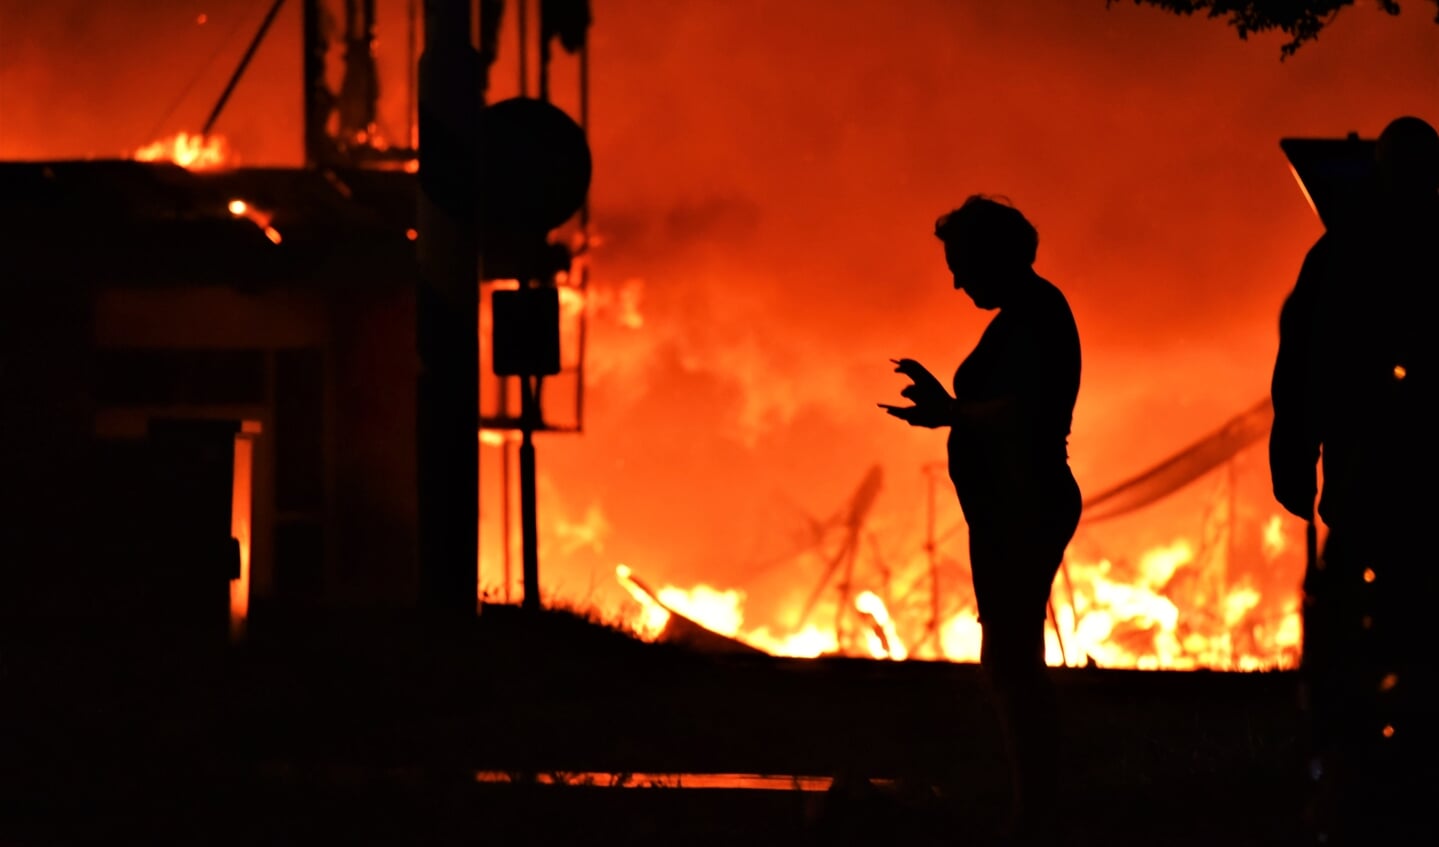 De genomineerde foto van Wim Heijboer van De Eendrachtbode, gemaakt tijdens een grote brand in Sint-Maartensdijk.